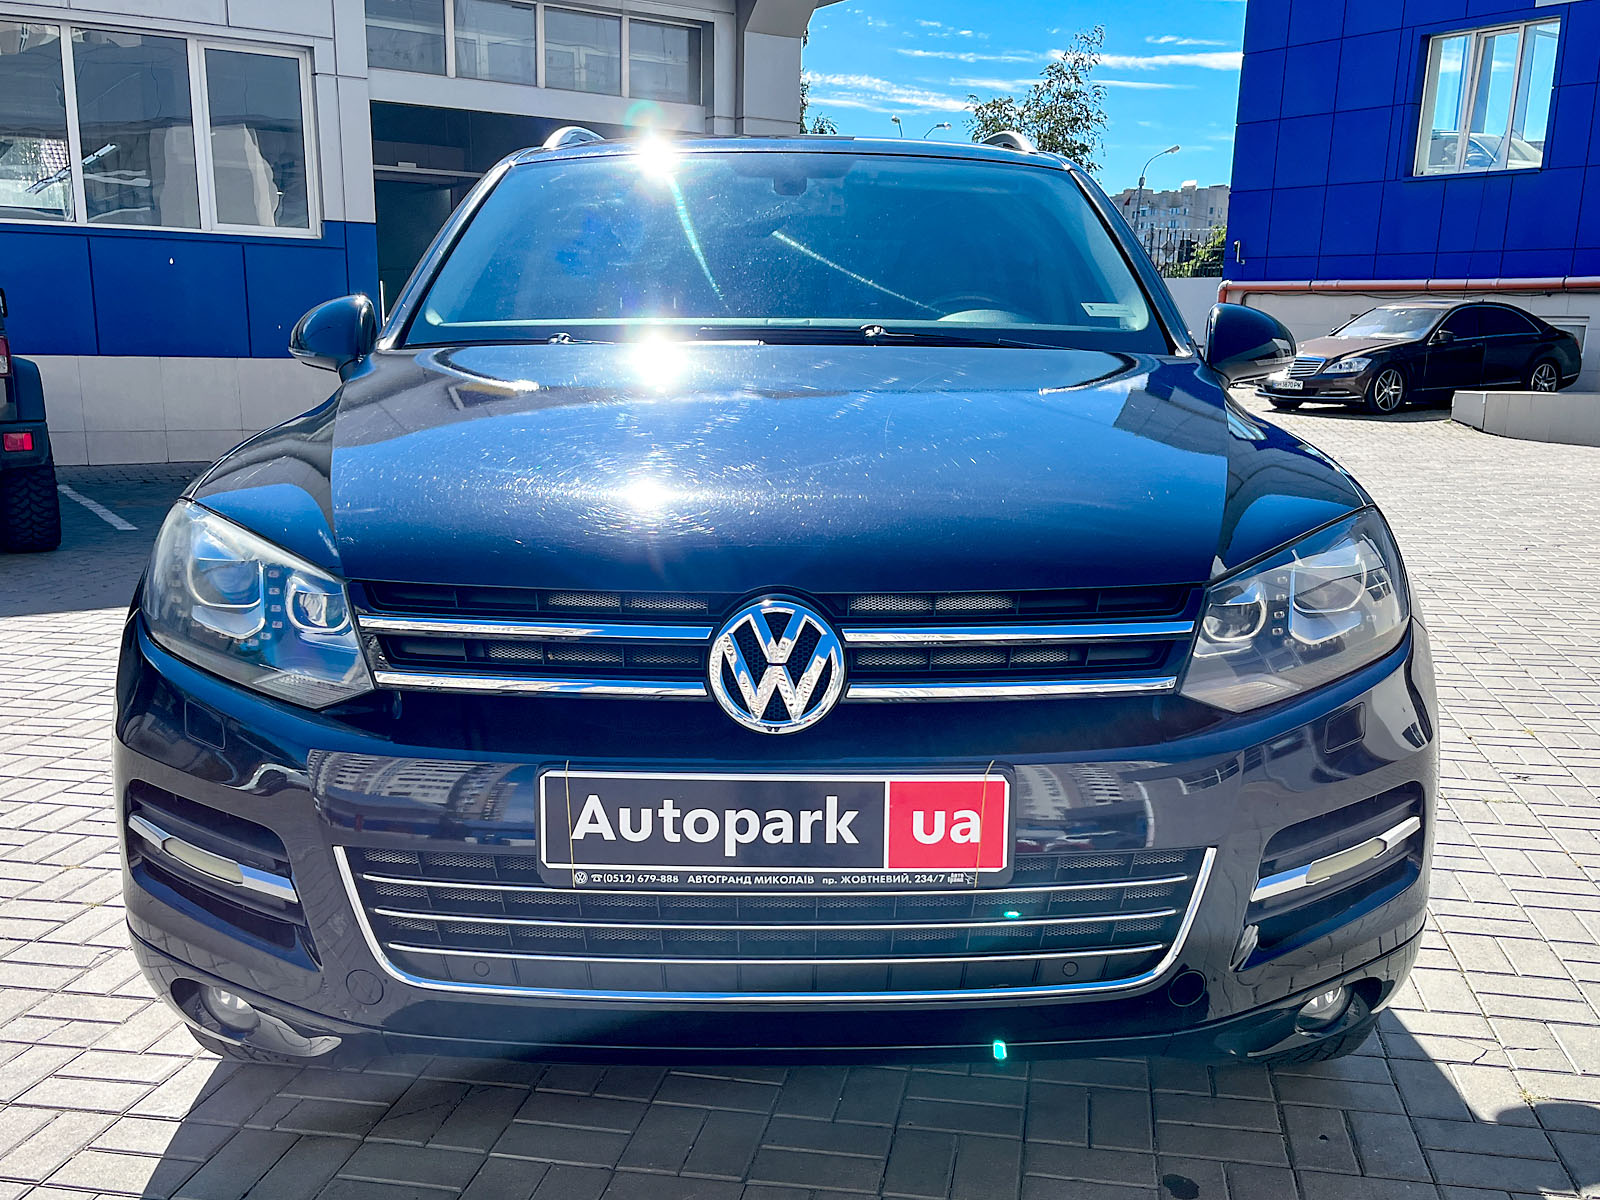 Автомобили Volkswagen LT купить в Украине, цена на б/у автомобили 